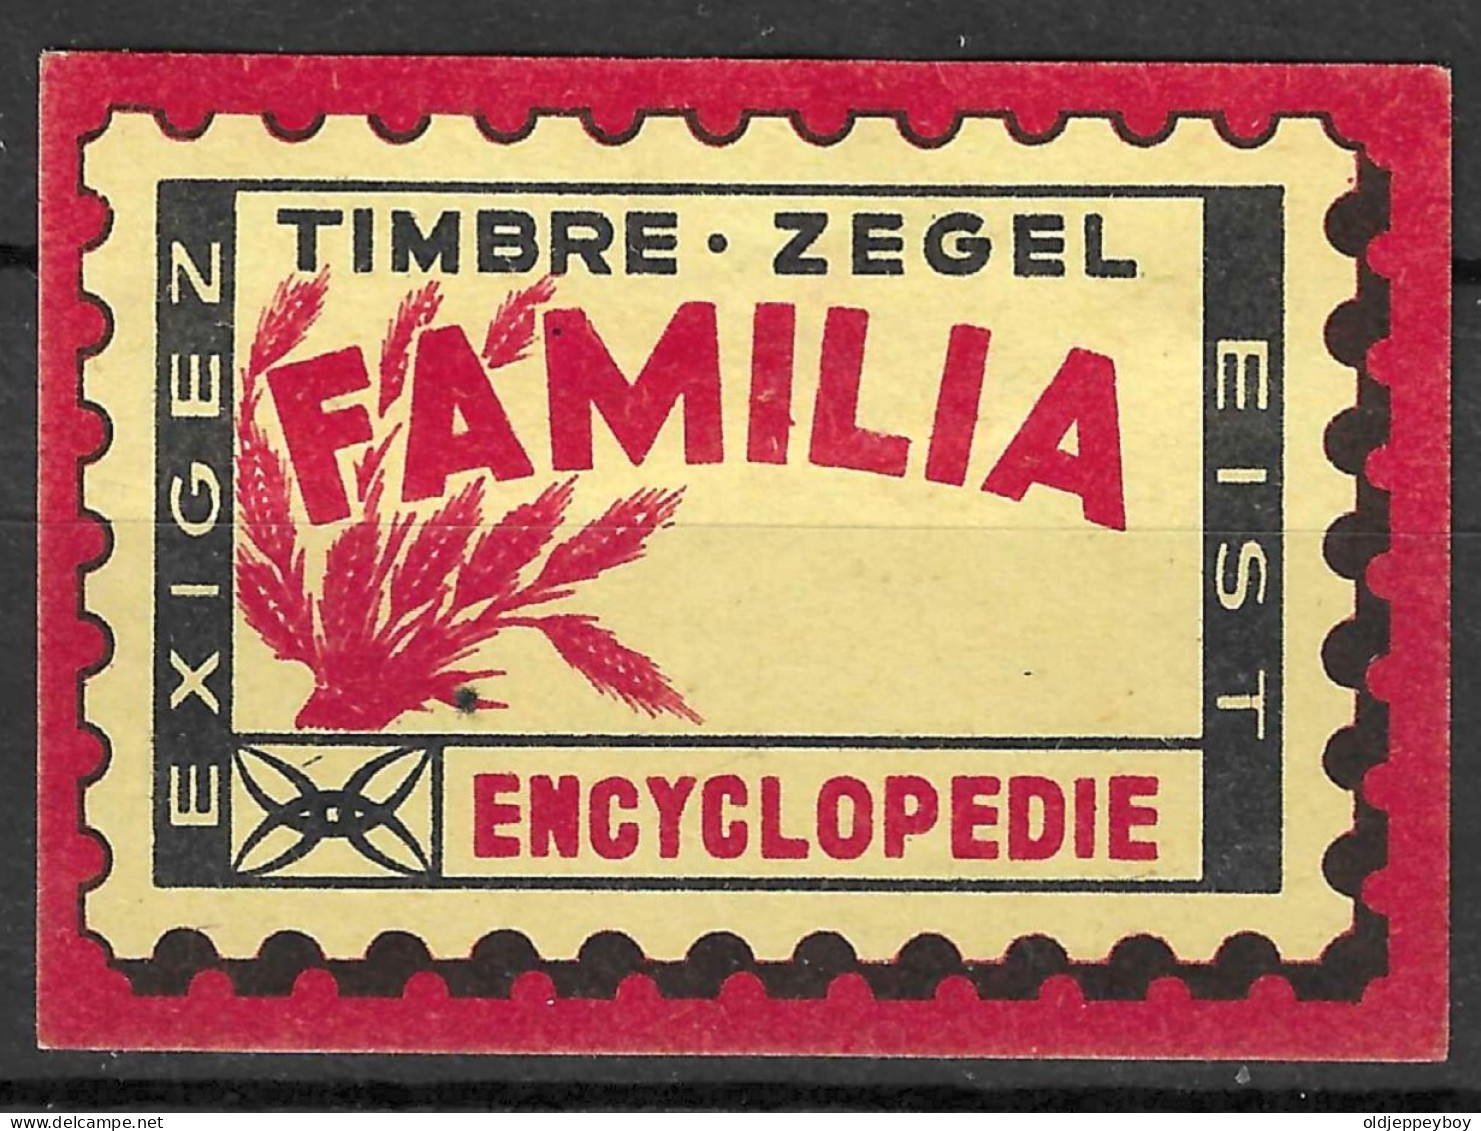  VINTAGE MATCHBOX LABEL Belgium Exigez Eist Timbre-zegel FAMILIA Encyclopedie  5  X 3.5  Cm  - Zündholzschachteletiketten